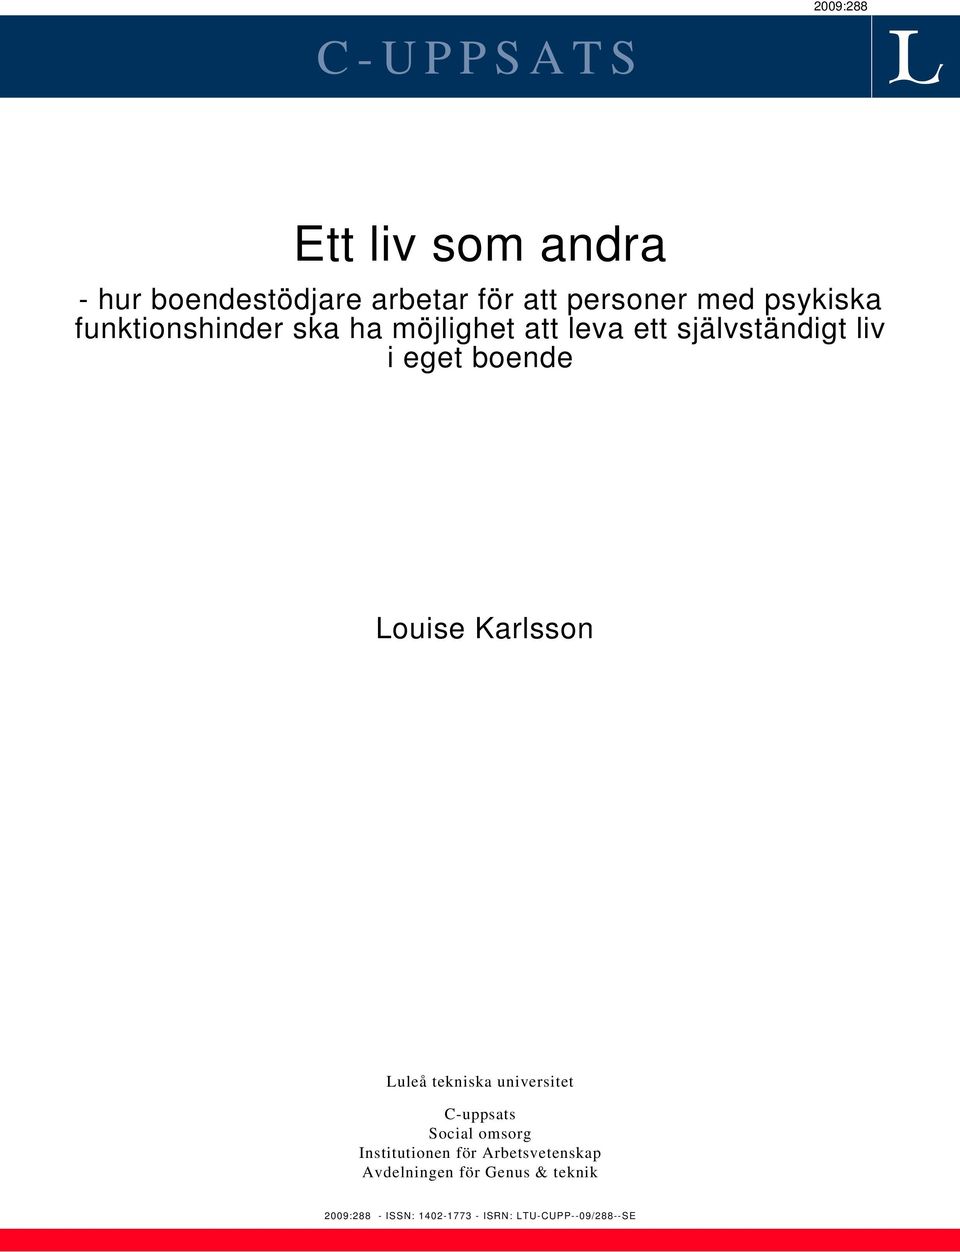 Louise Karlsson Luleå tekniska universitet C-uppsats Social omsorg Institutionen för